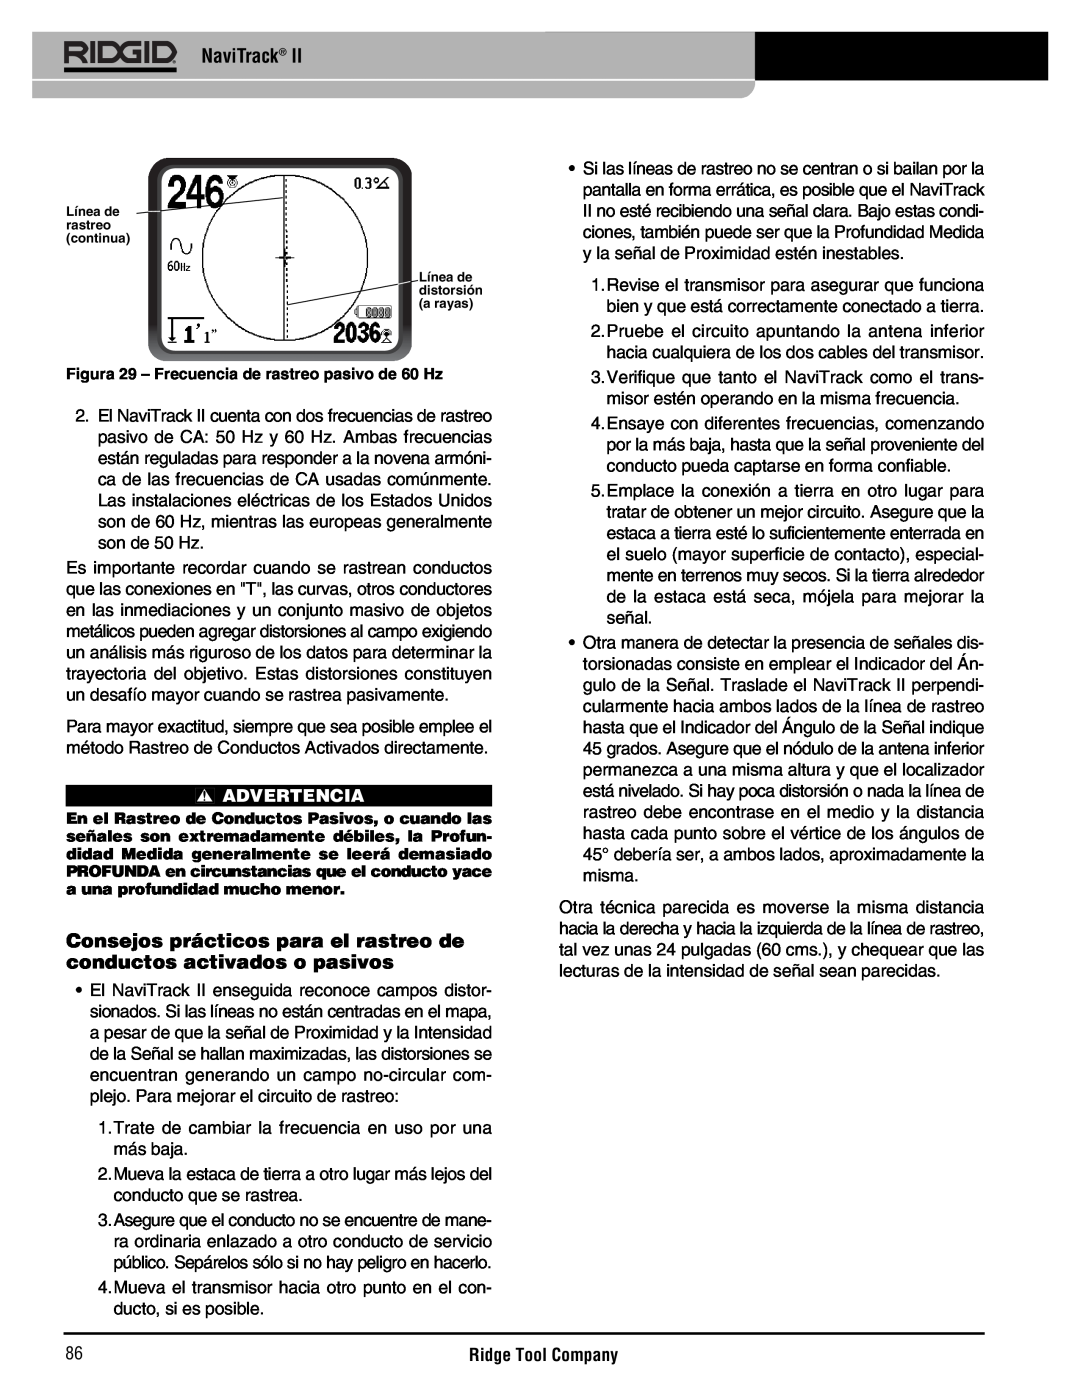 RIDGID Metal Detector manual Consejos prácticos para el rastreo de conductos activados o pasivos, NaviTrack, Advertencia 